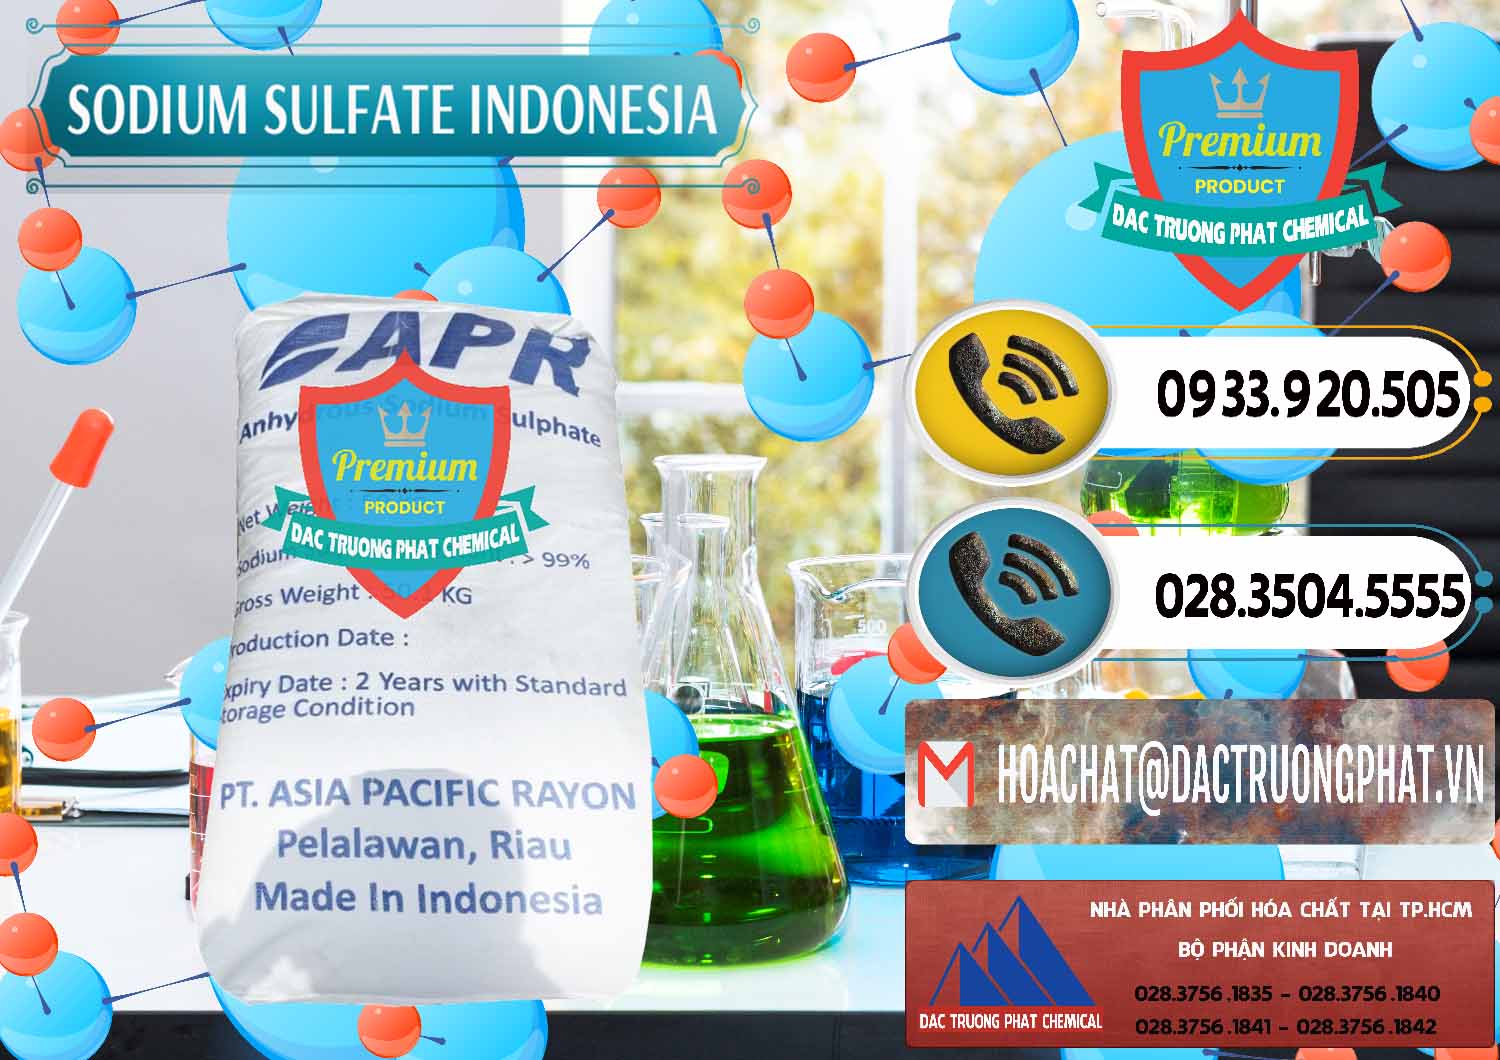 Chuyên cung cấp & bán Sodium Sulphate - Muối Sunfat Na2SO4 APR Indonesia - 0460 - Cty chuyên cung cấp _ nhập khẩu hóa chất tại TP.HCM - hoachatdetnhuom.vn